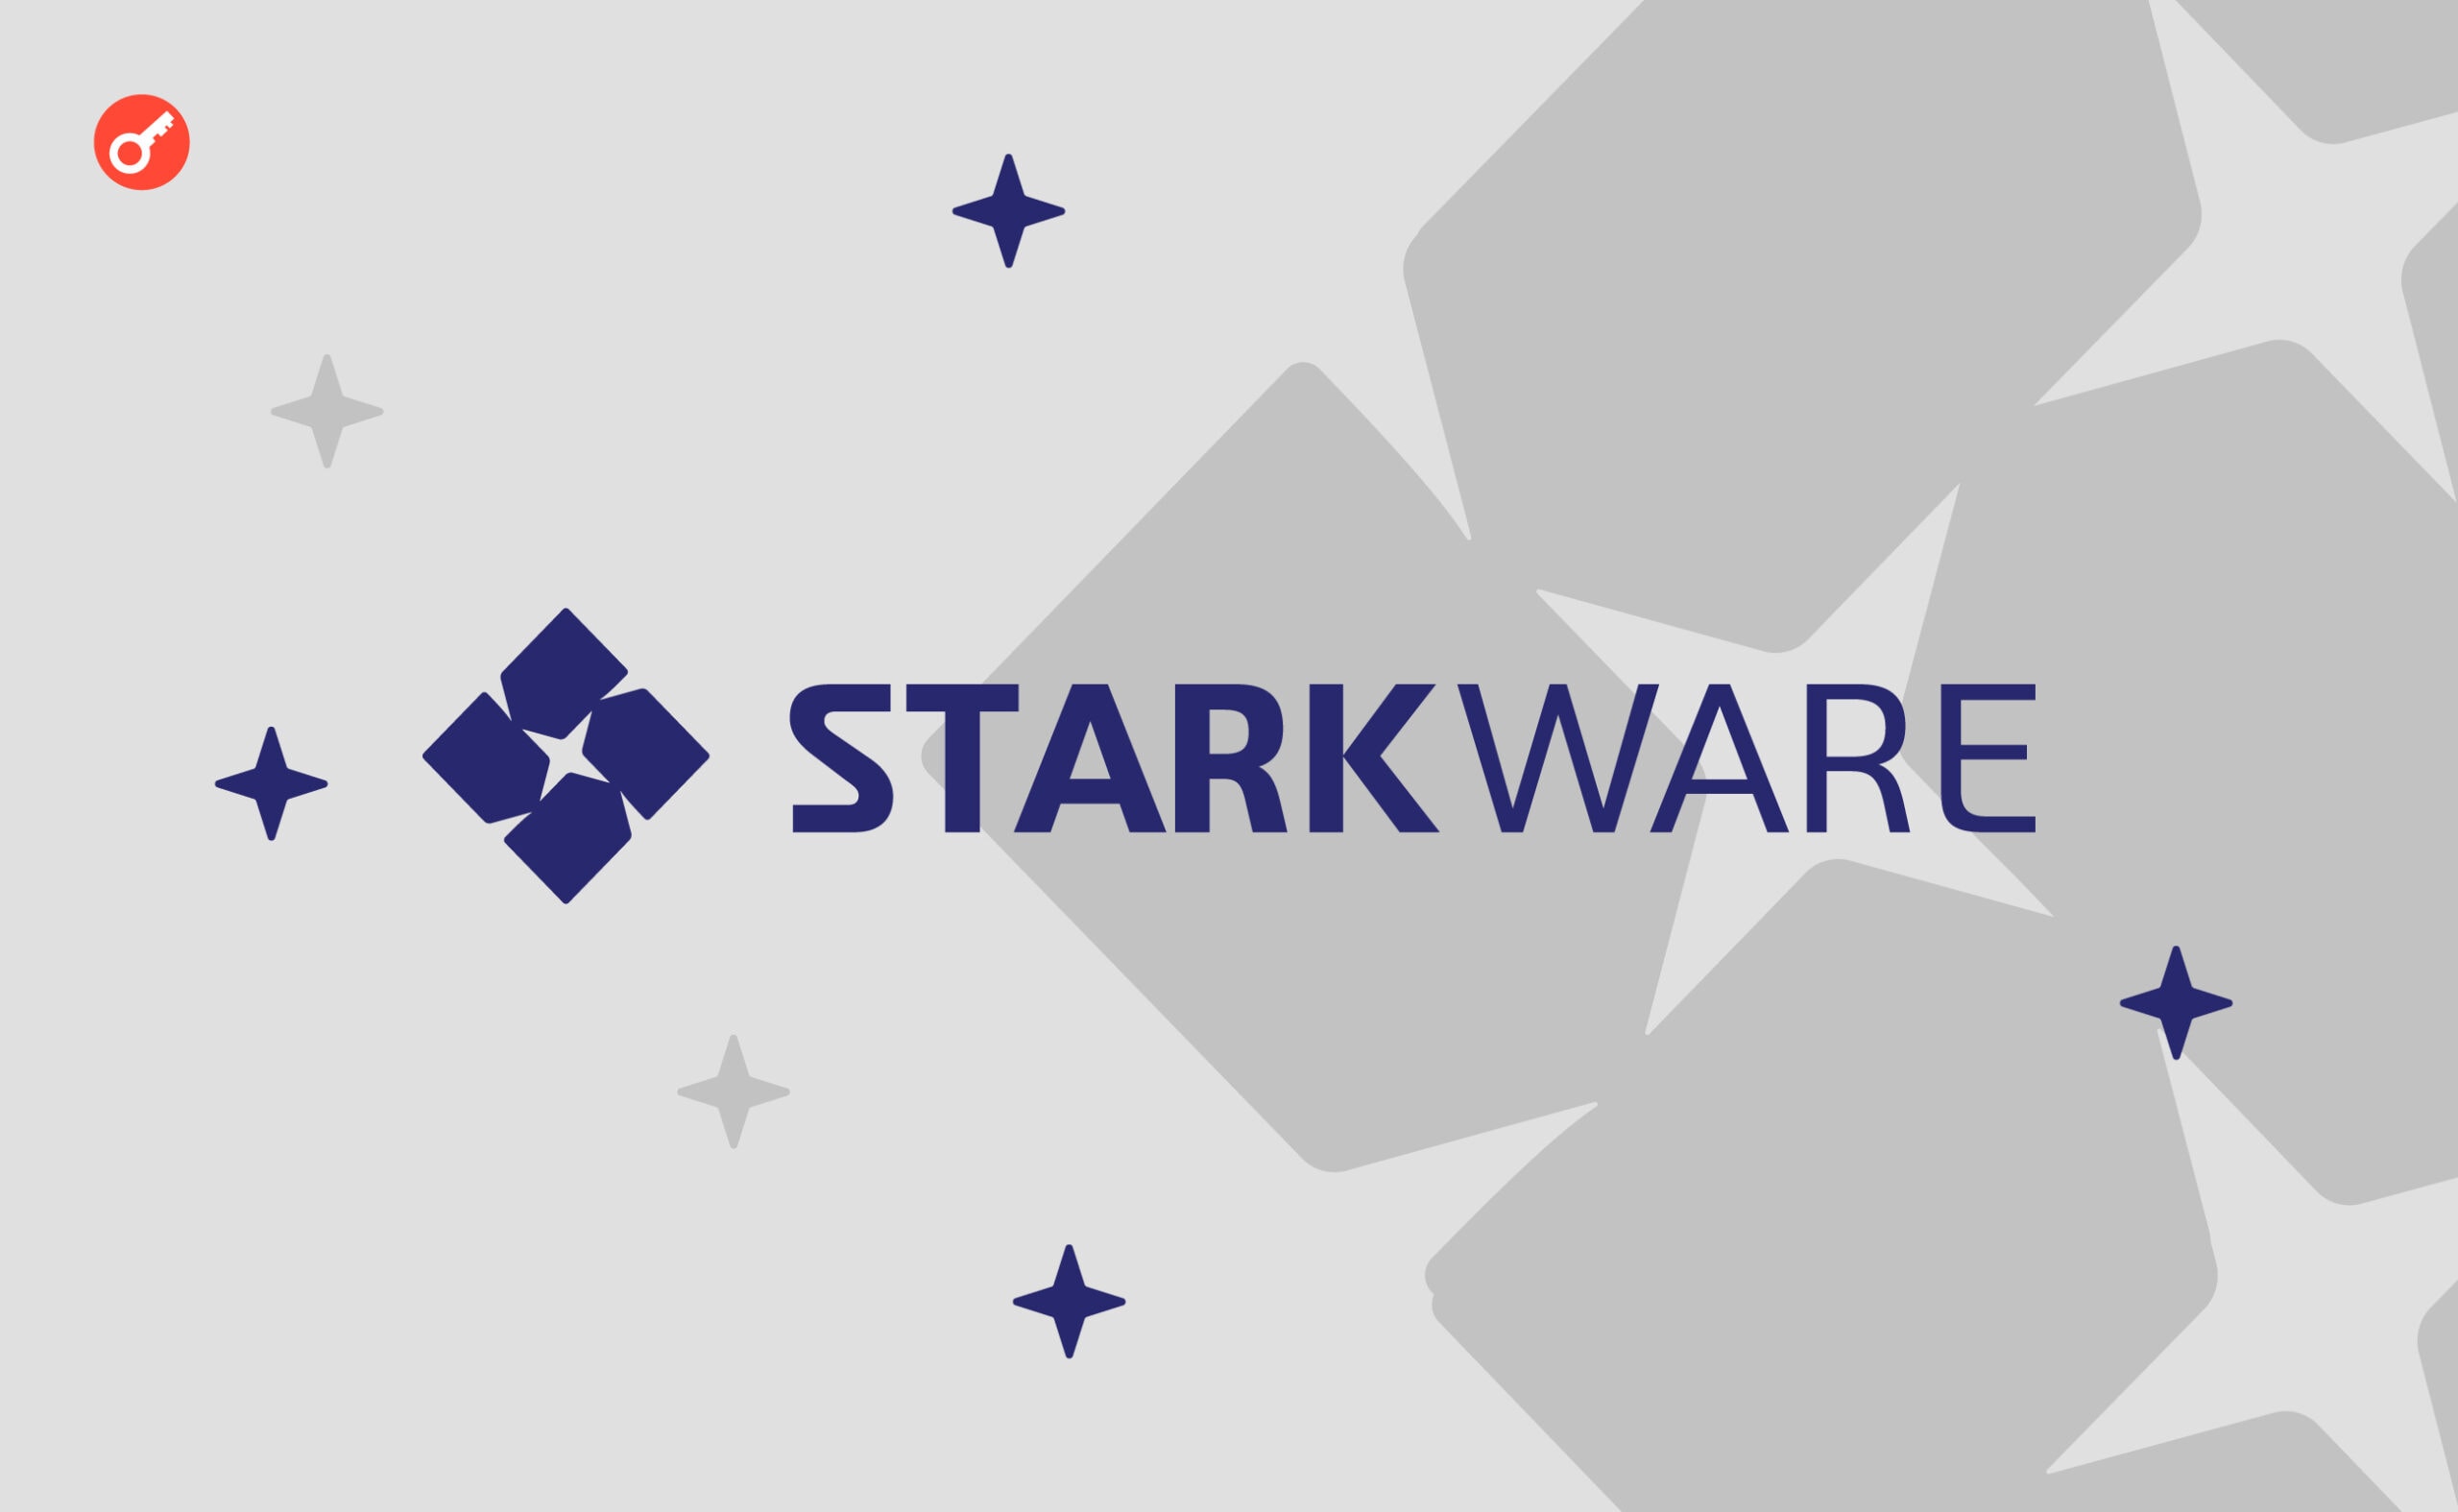 StarkWare опублікували «дорожню карту» на 2023 рік. Головний колаж новини.